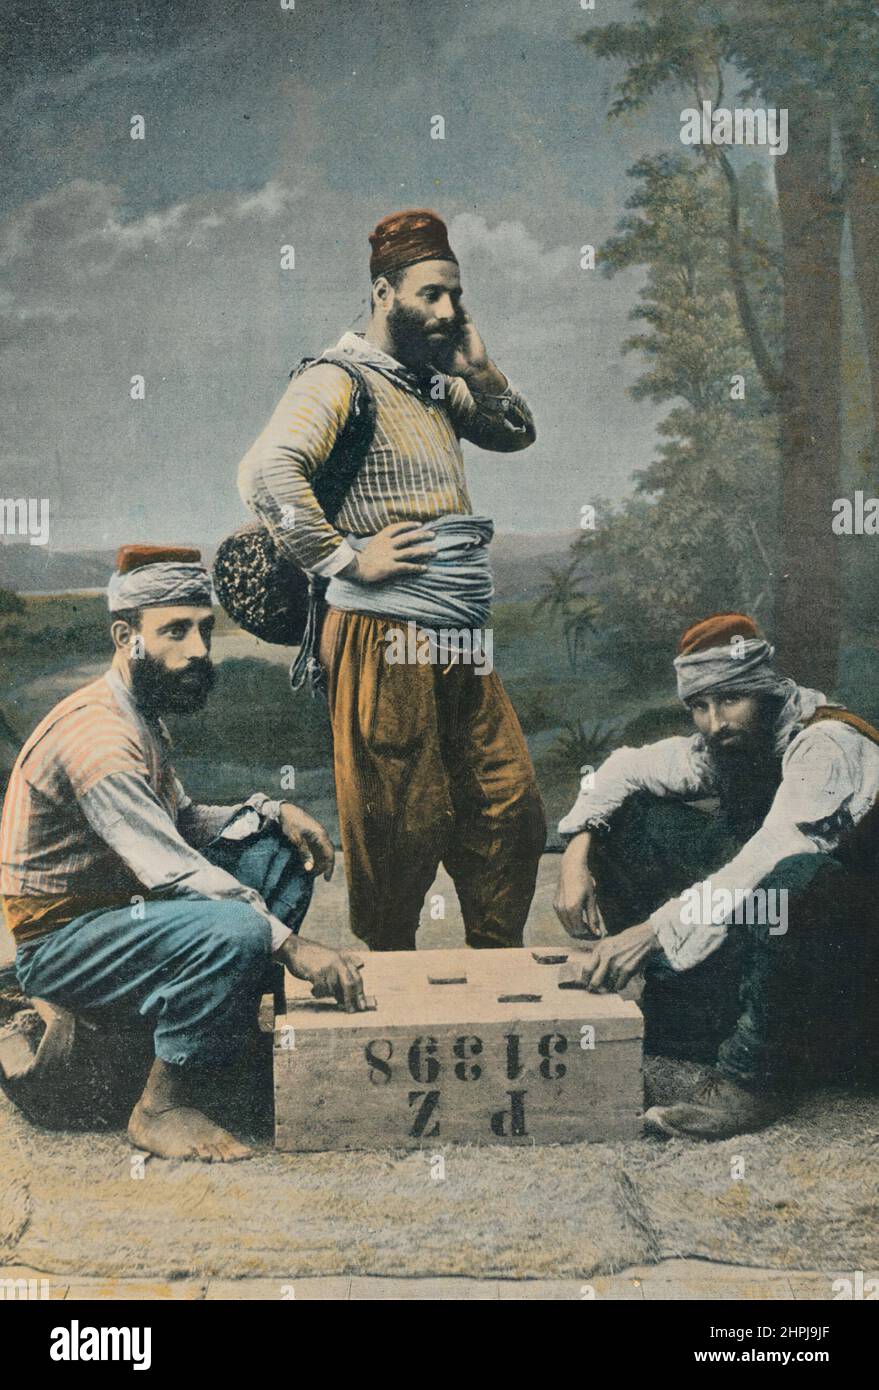 PORTEFAIX A SALONIQUE Autour Du Monde En Macedoine, 1895 - 1910  (3)  - 19 th century french colored photography print Stock Photo